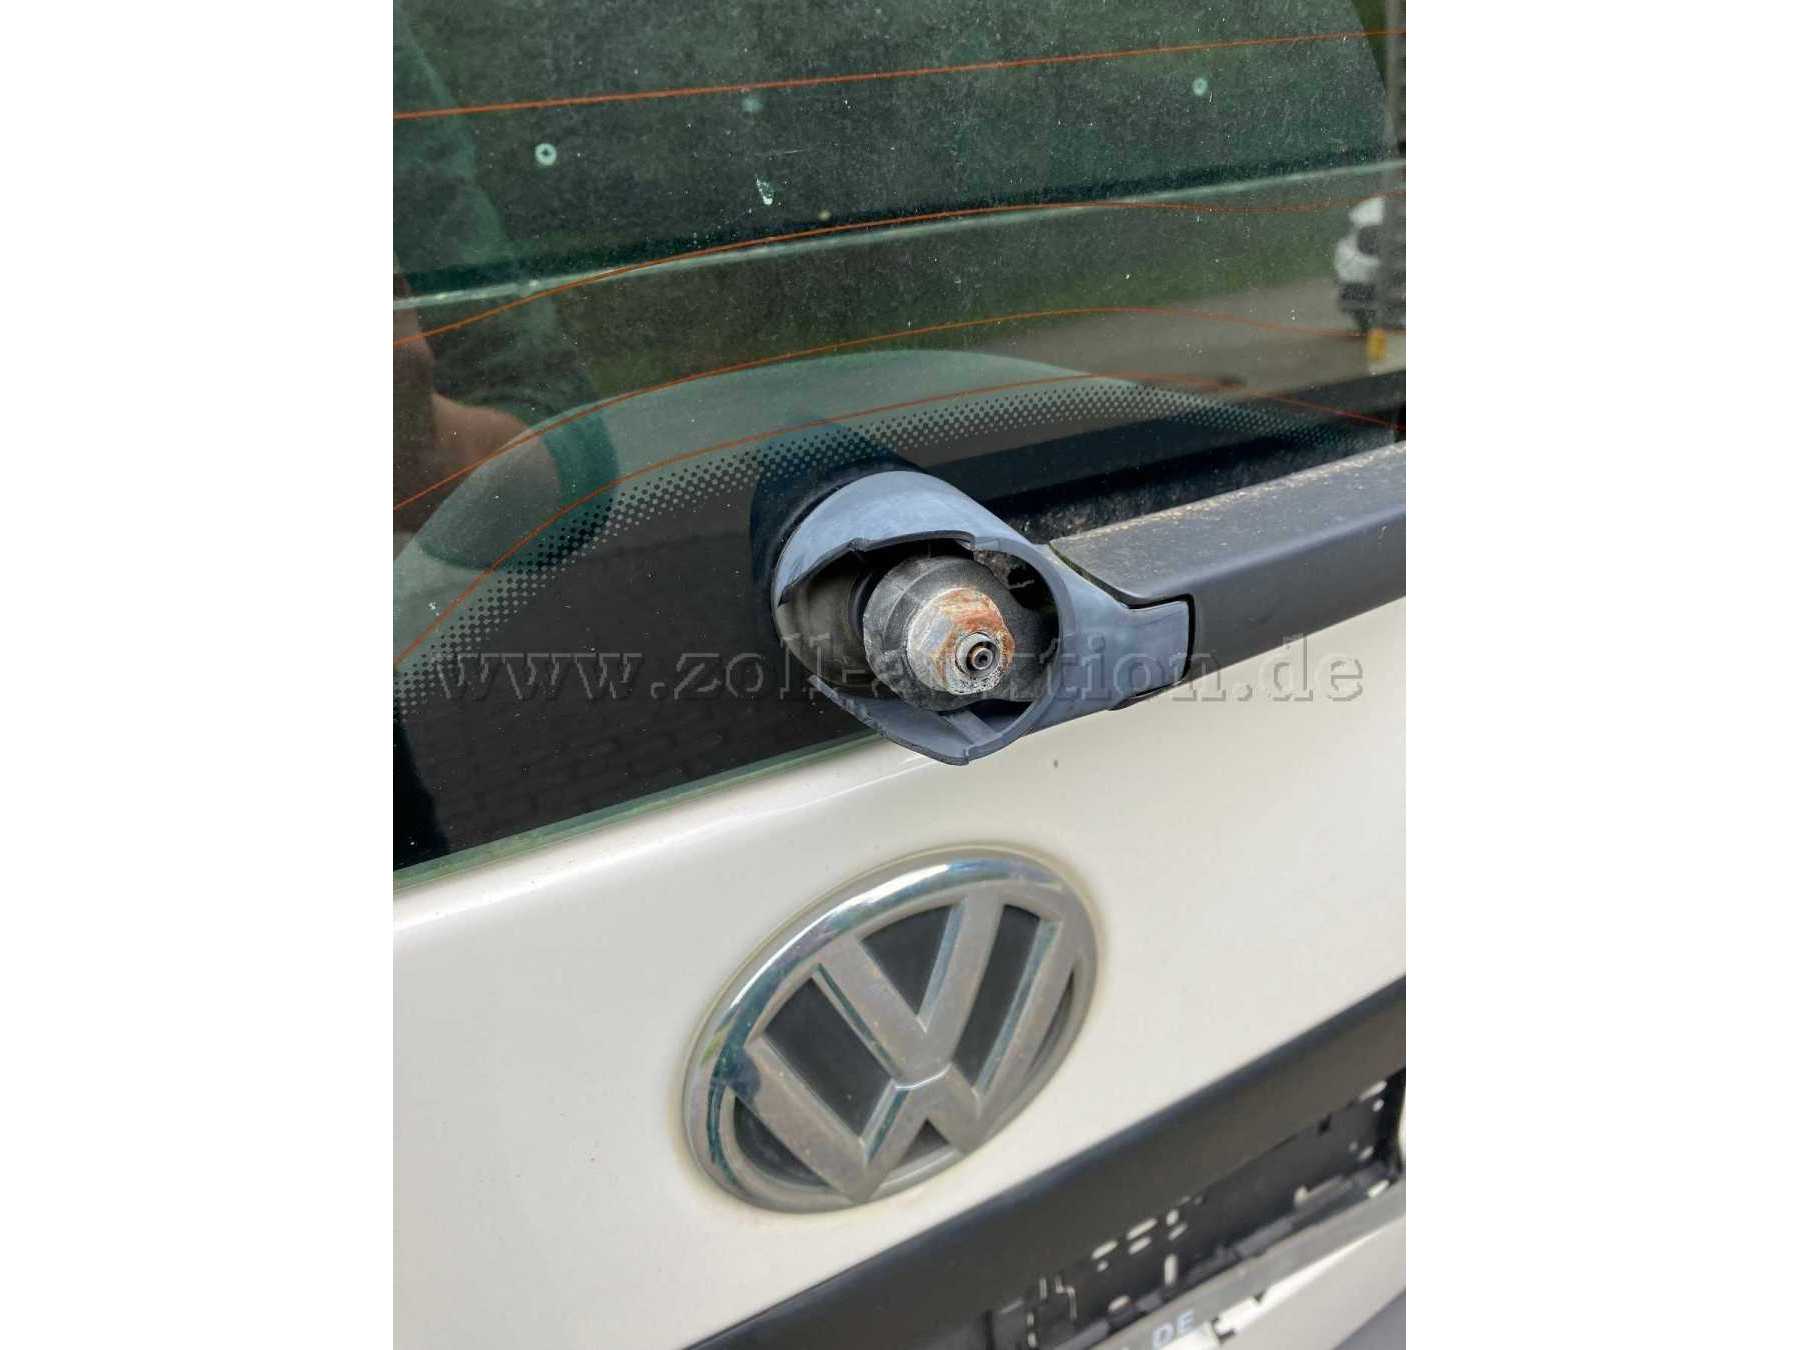 VW Caddy 2.0 Heckwischer Abdeckung gebrochen